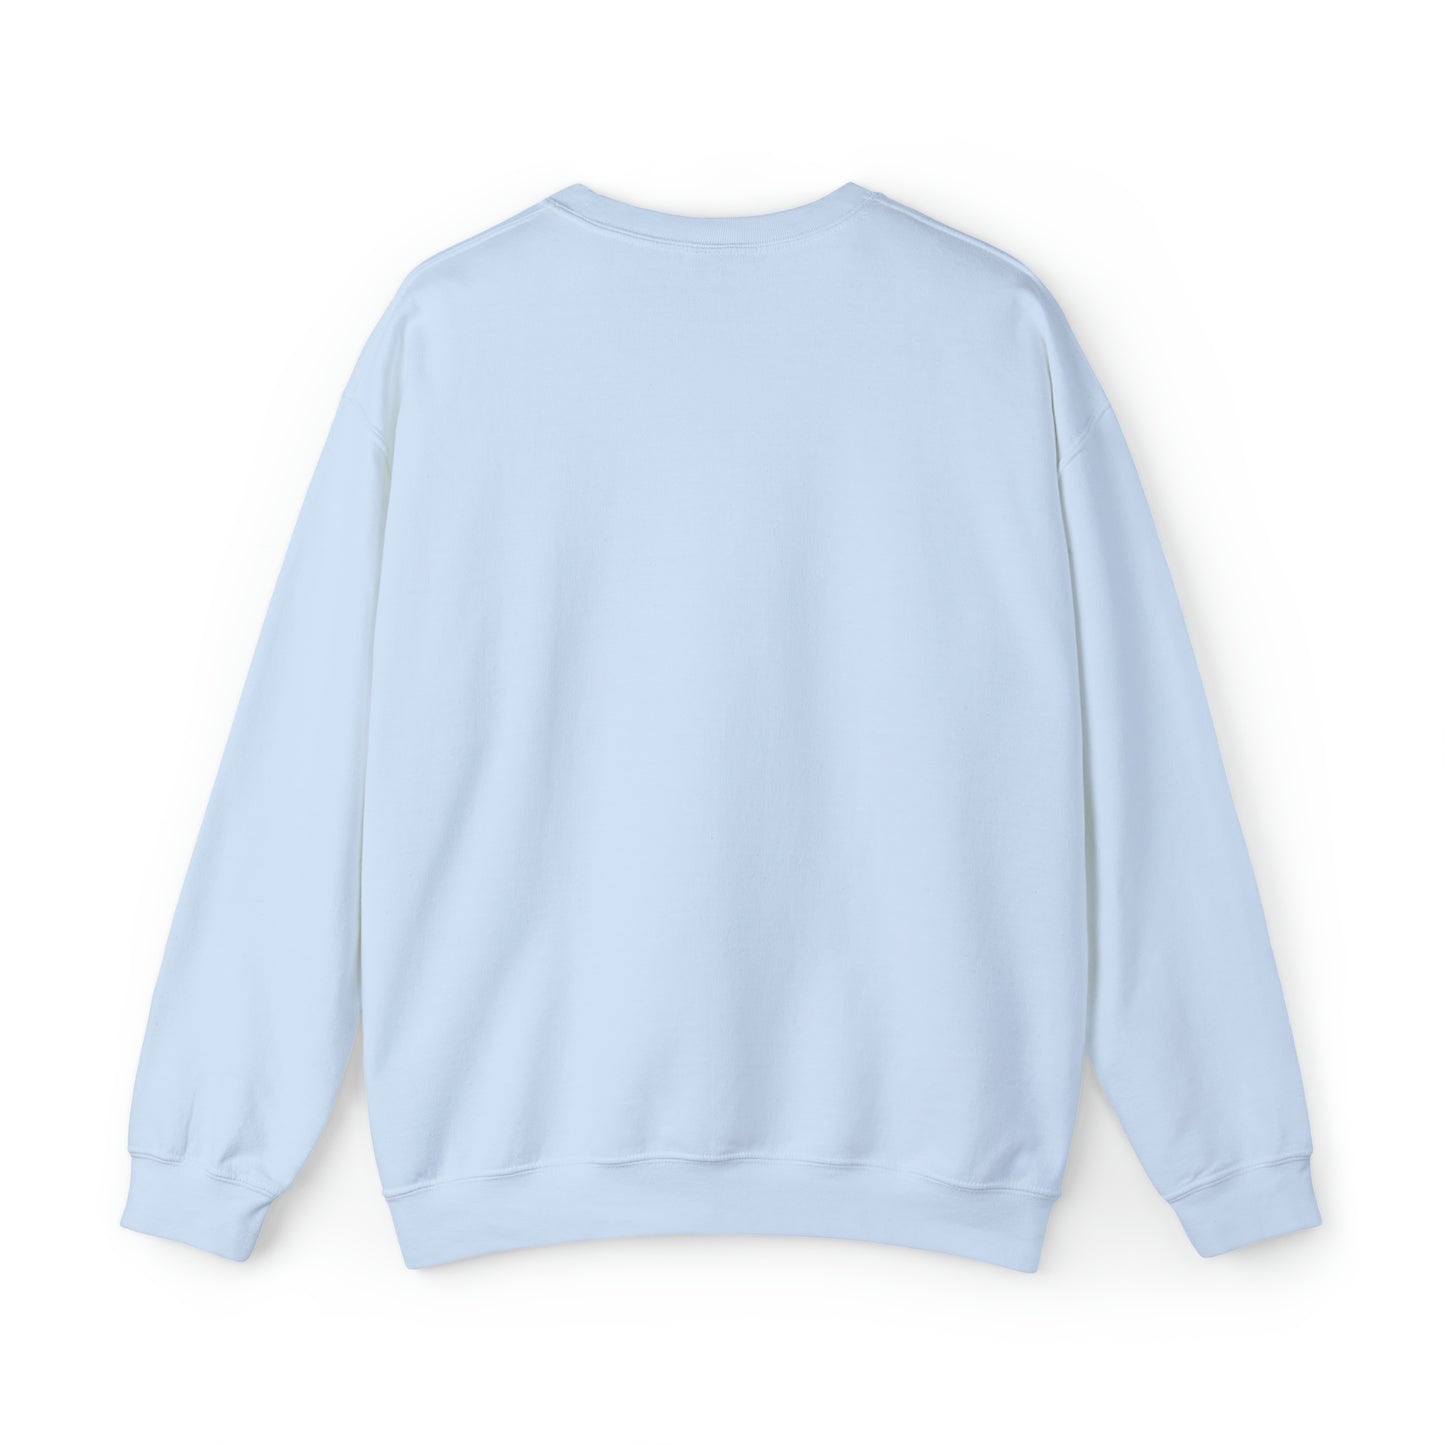 Pocky Kawaii Sweatshirt Blue